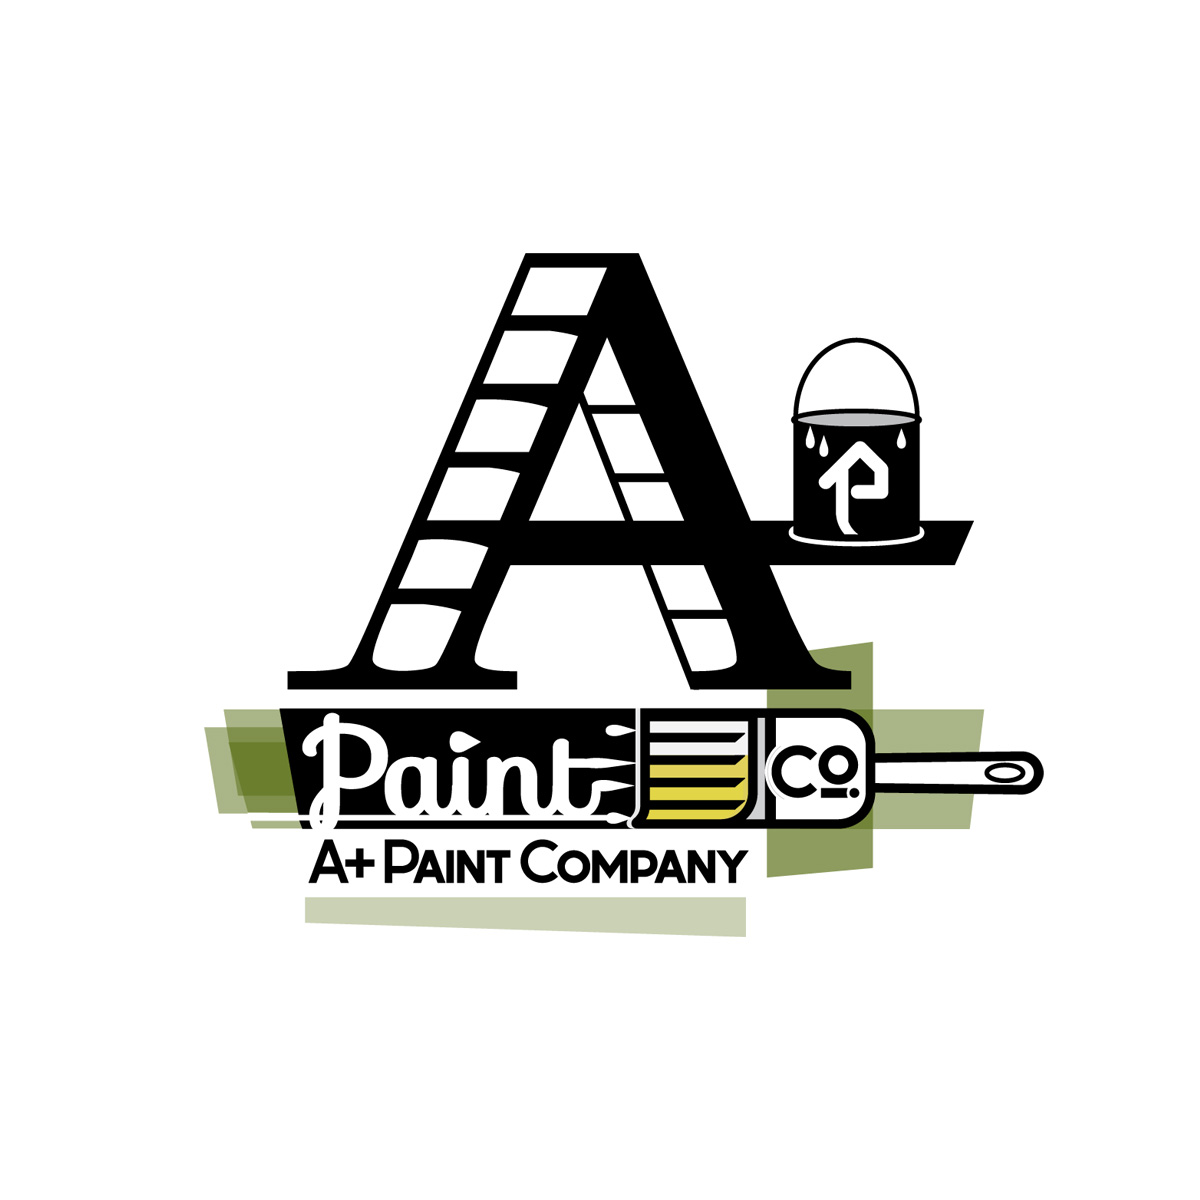 painters company typographic tradesmen logo